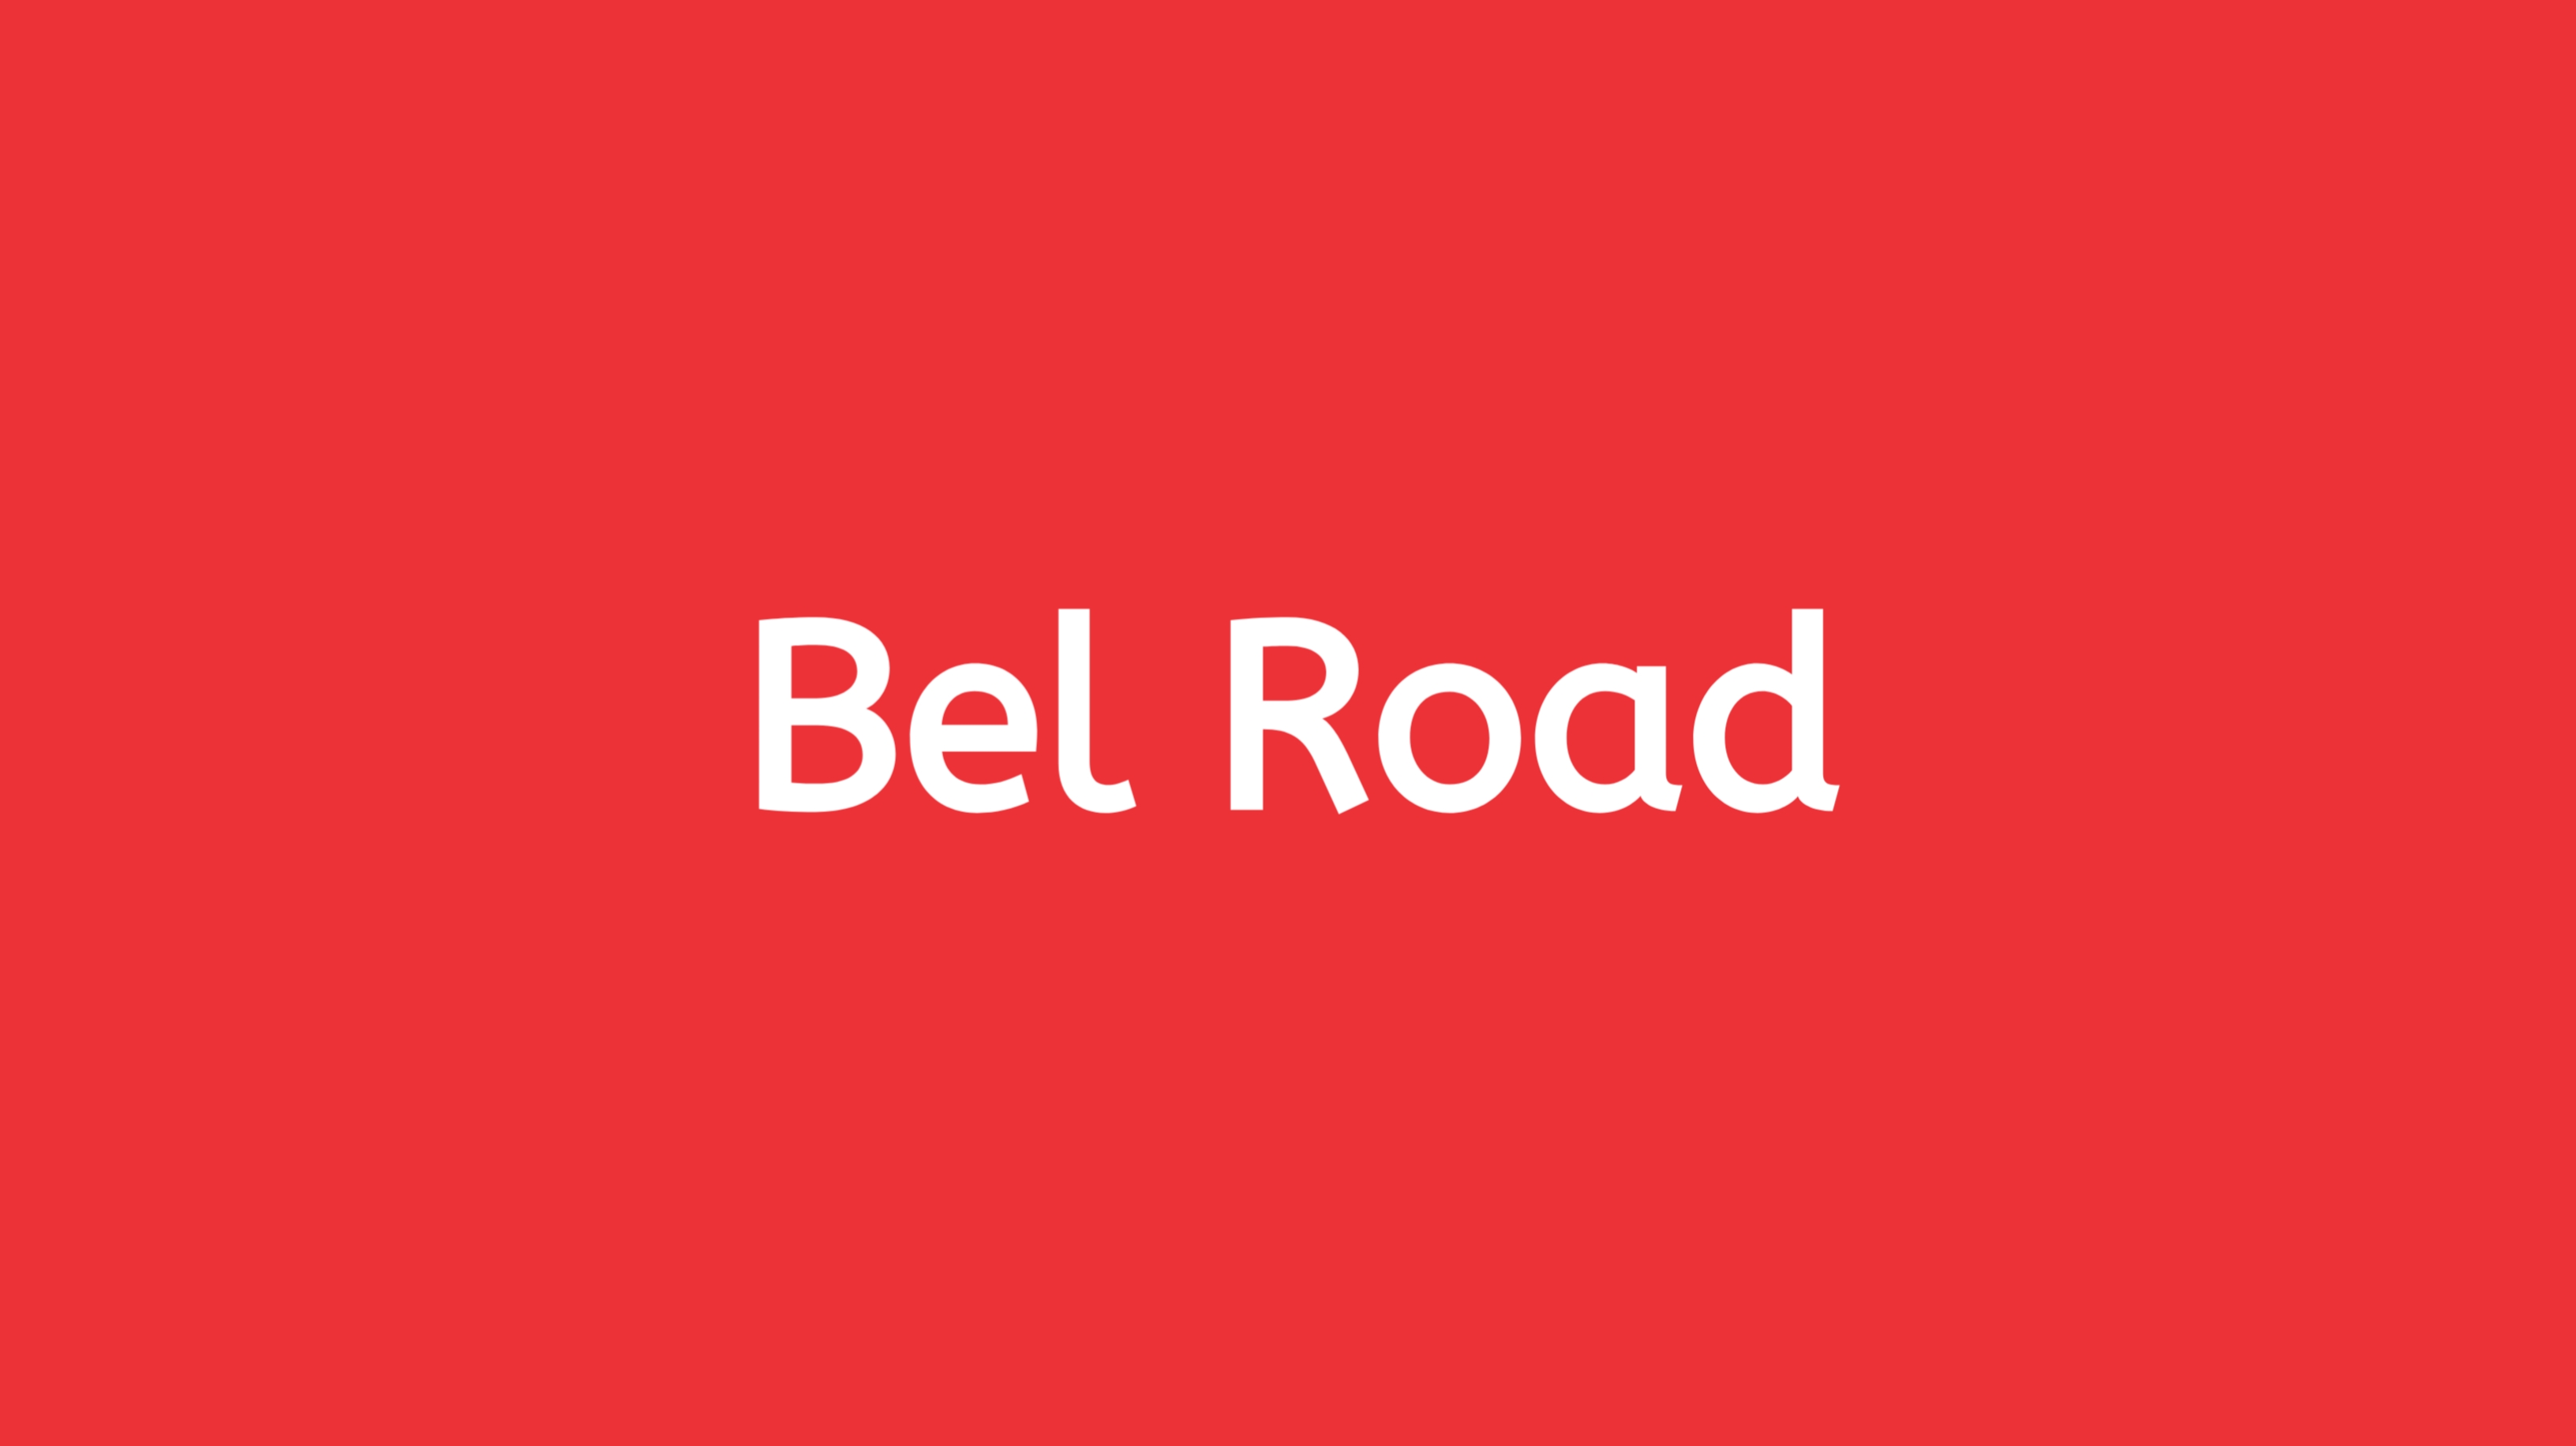 StayFit-Bel Road